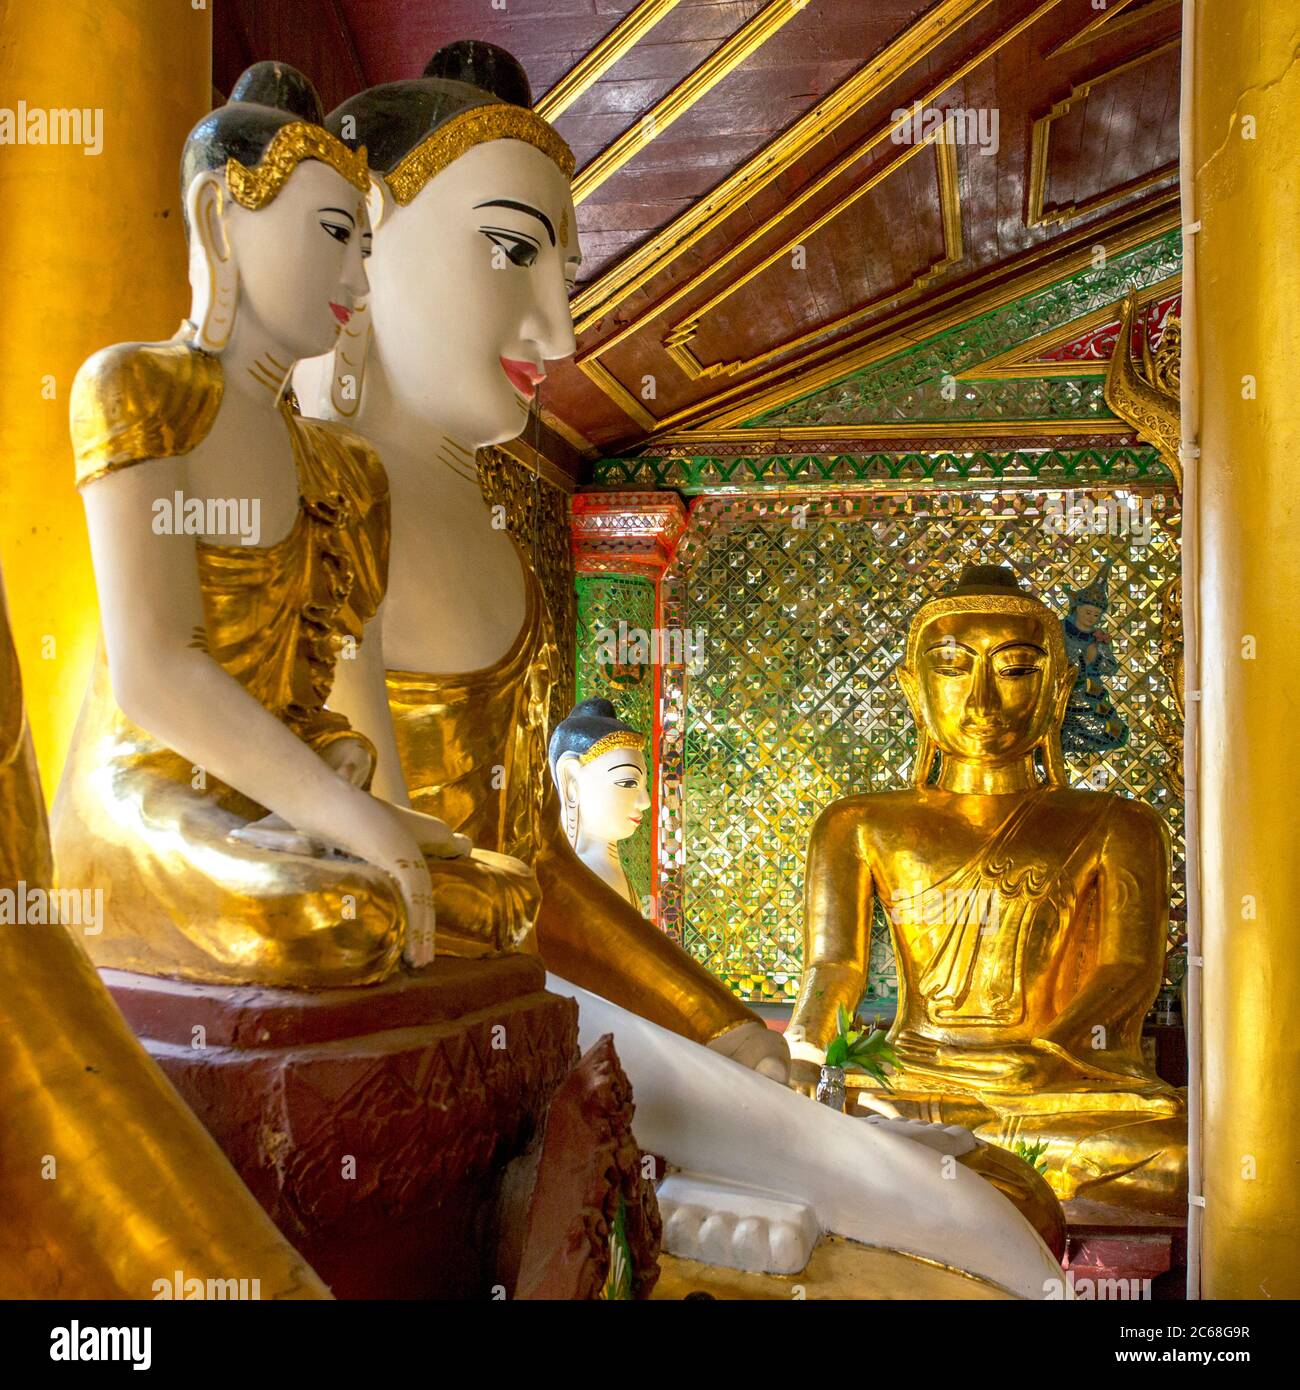 Buddha Statues in the Shwedagon Pagoda, Yangon, Myanmar Stock Photo